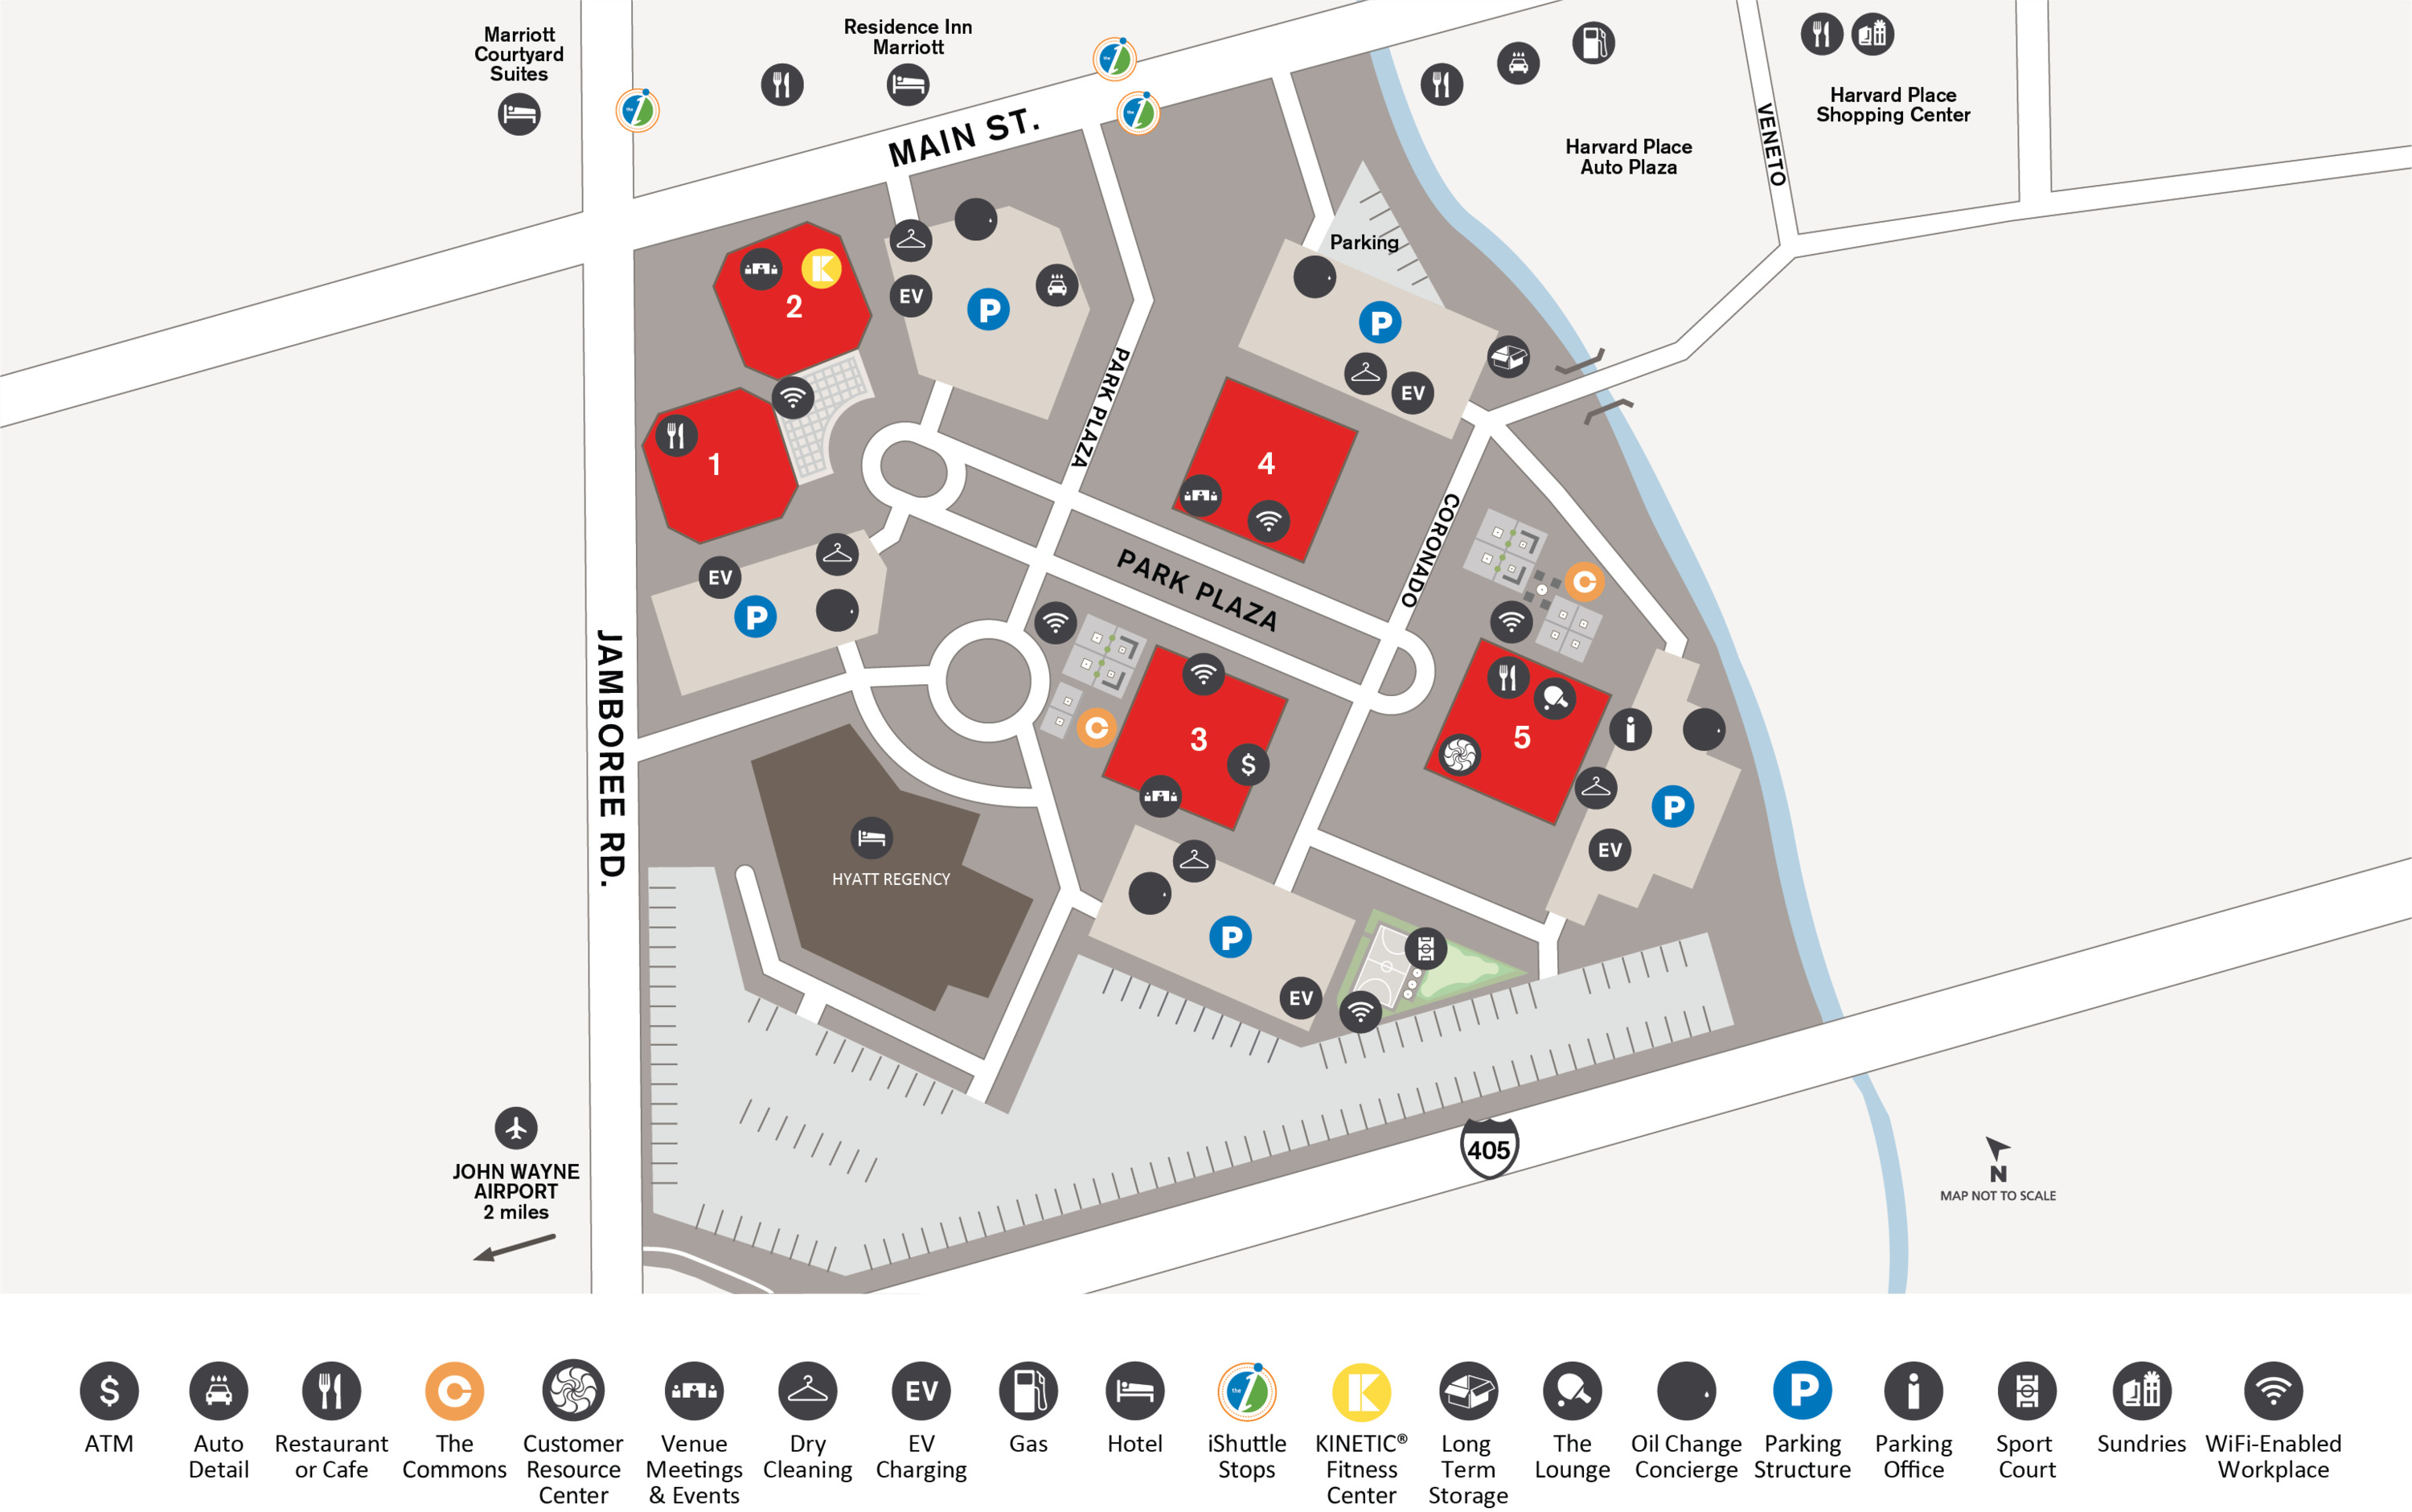 Site Map for Jamboree Center, located in Irvine, CA.